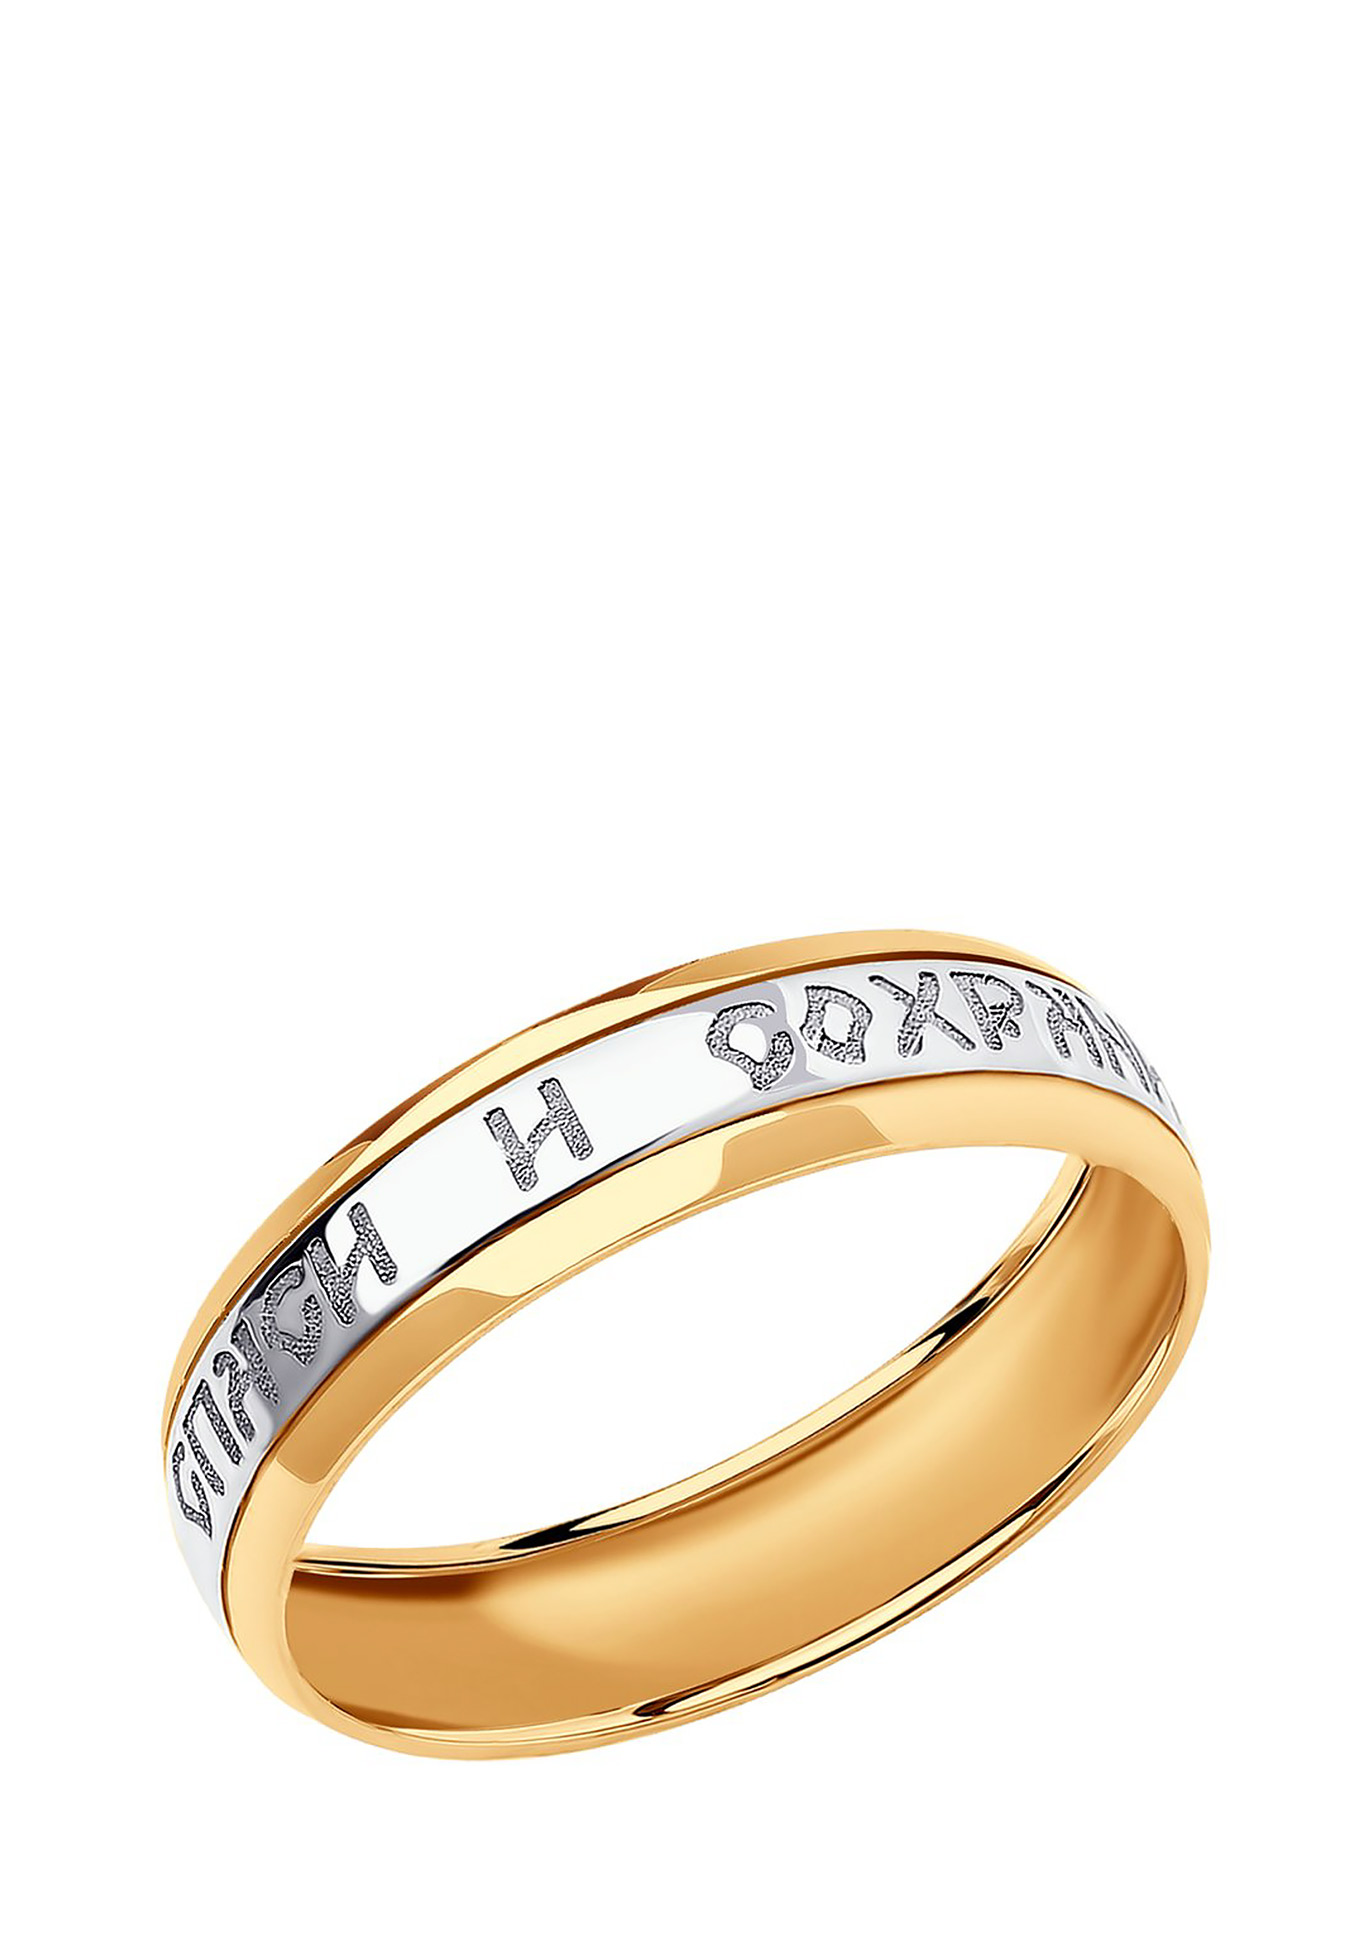 Кольцо золотое Спаси и Сохрани кольцо спаси и сохрани из серебра